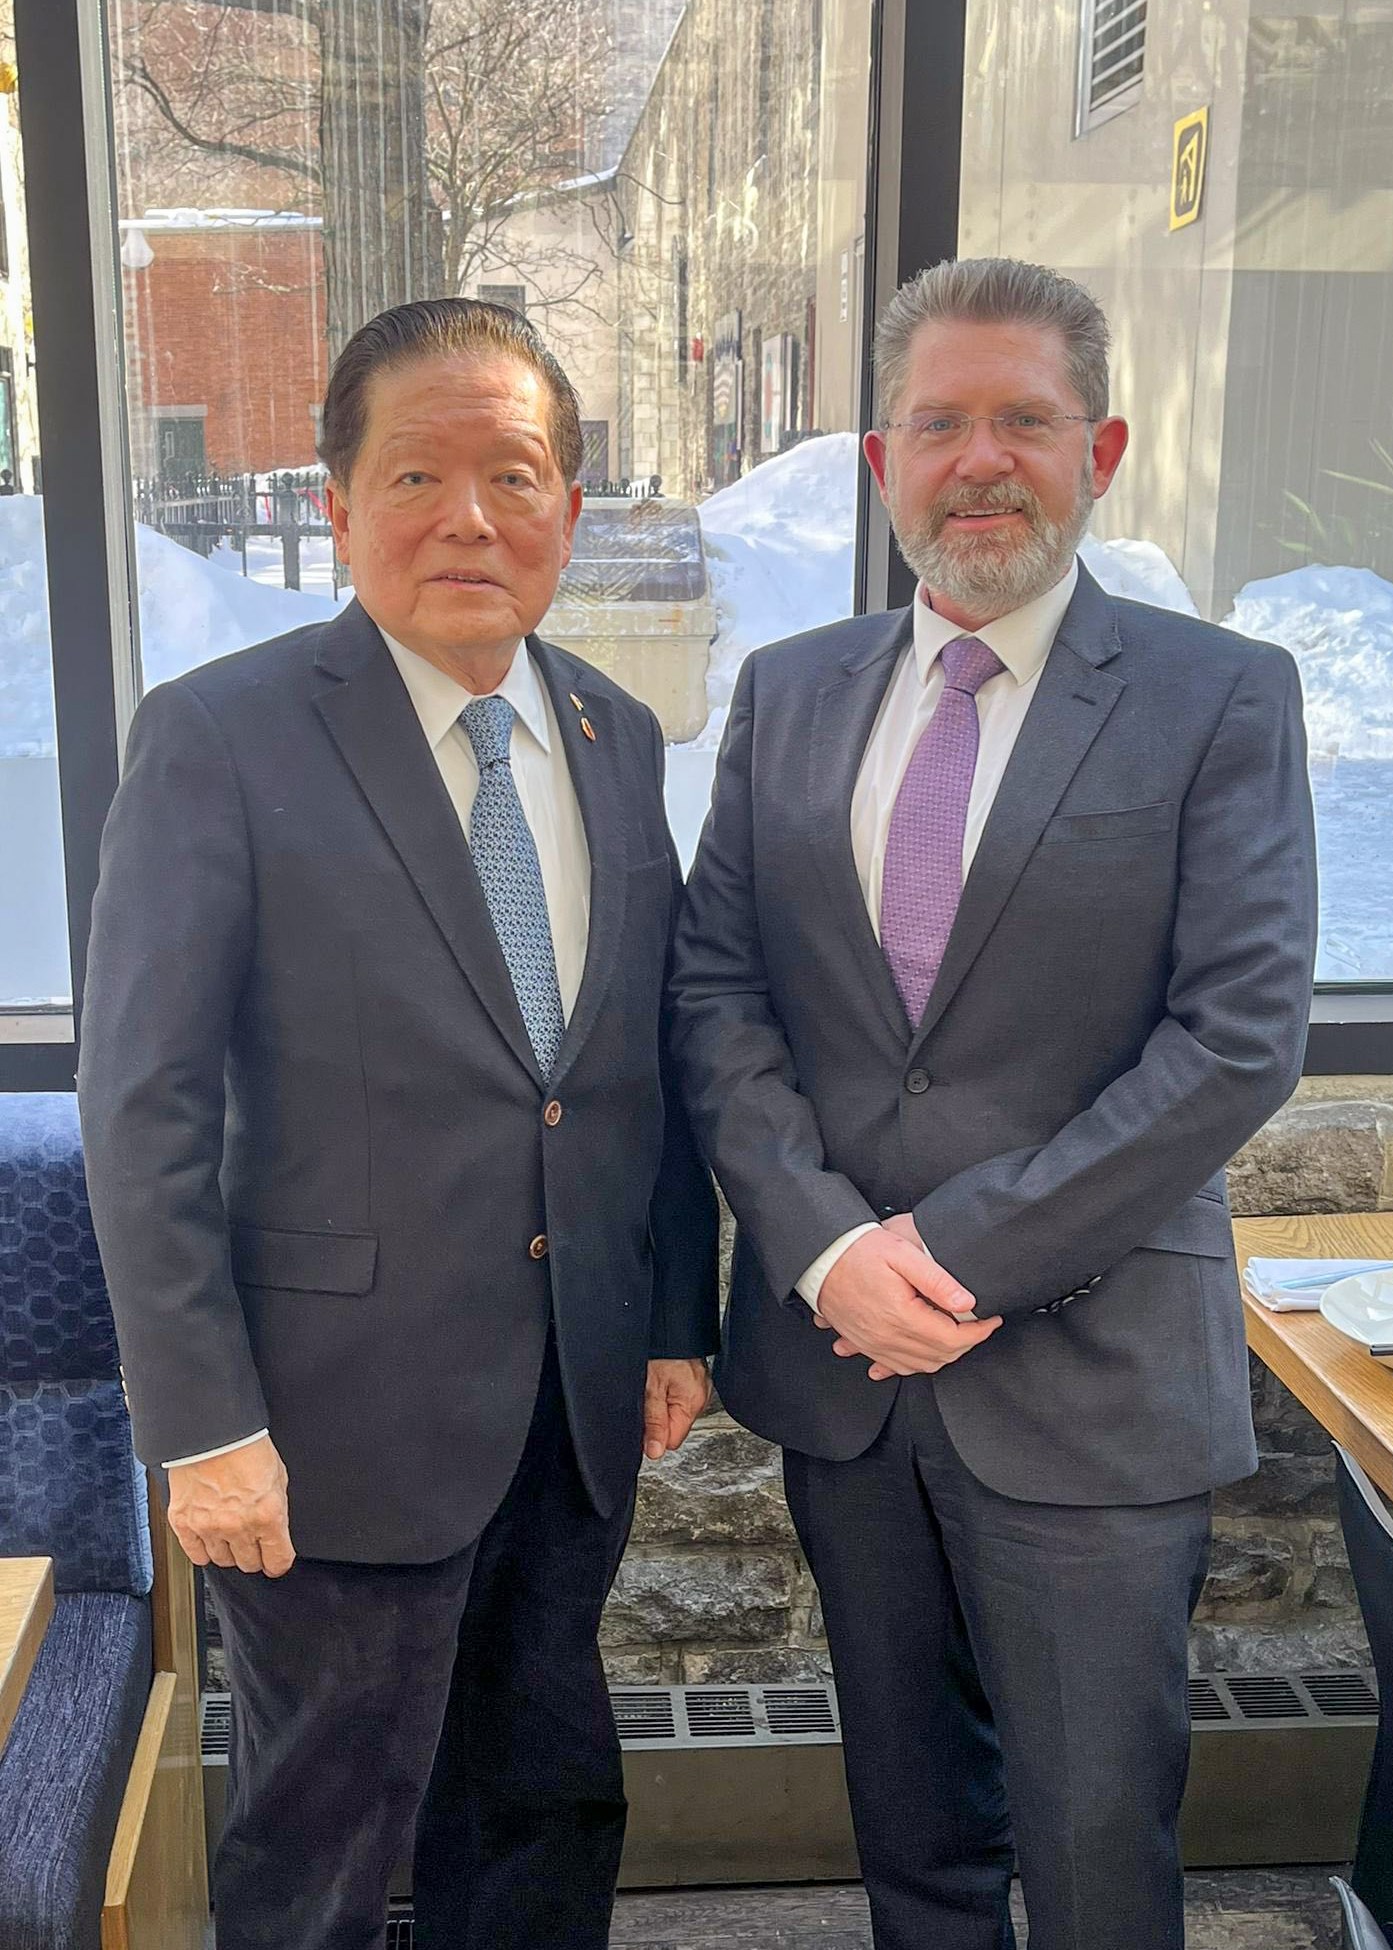 Le sénateur Victor Oh est heureux de rencontrer Scott Ryan, le nouveau haut-commissaire de l’Australie au Canada. Les deux hommes s’étaient déjà croisés au Japon, au Cambodge et en Ouganda, et le sénateur Oh dit avoir hâte de travailler avec le haut-commissaire